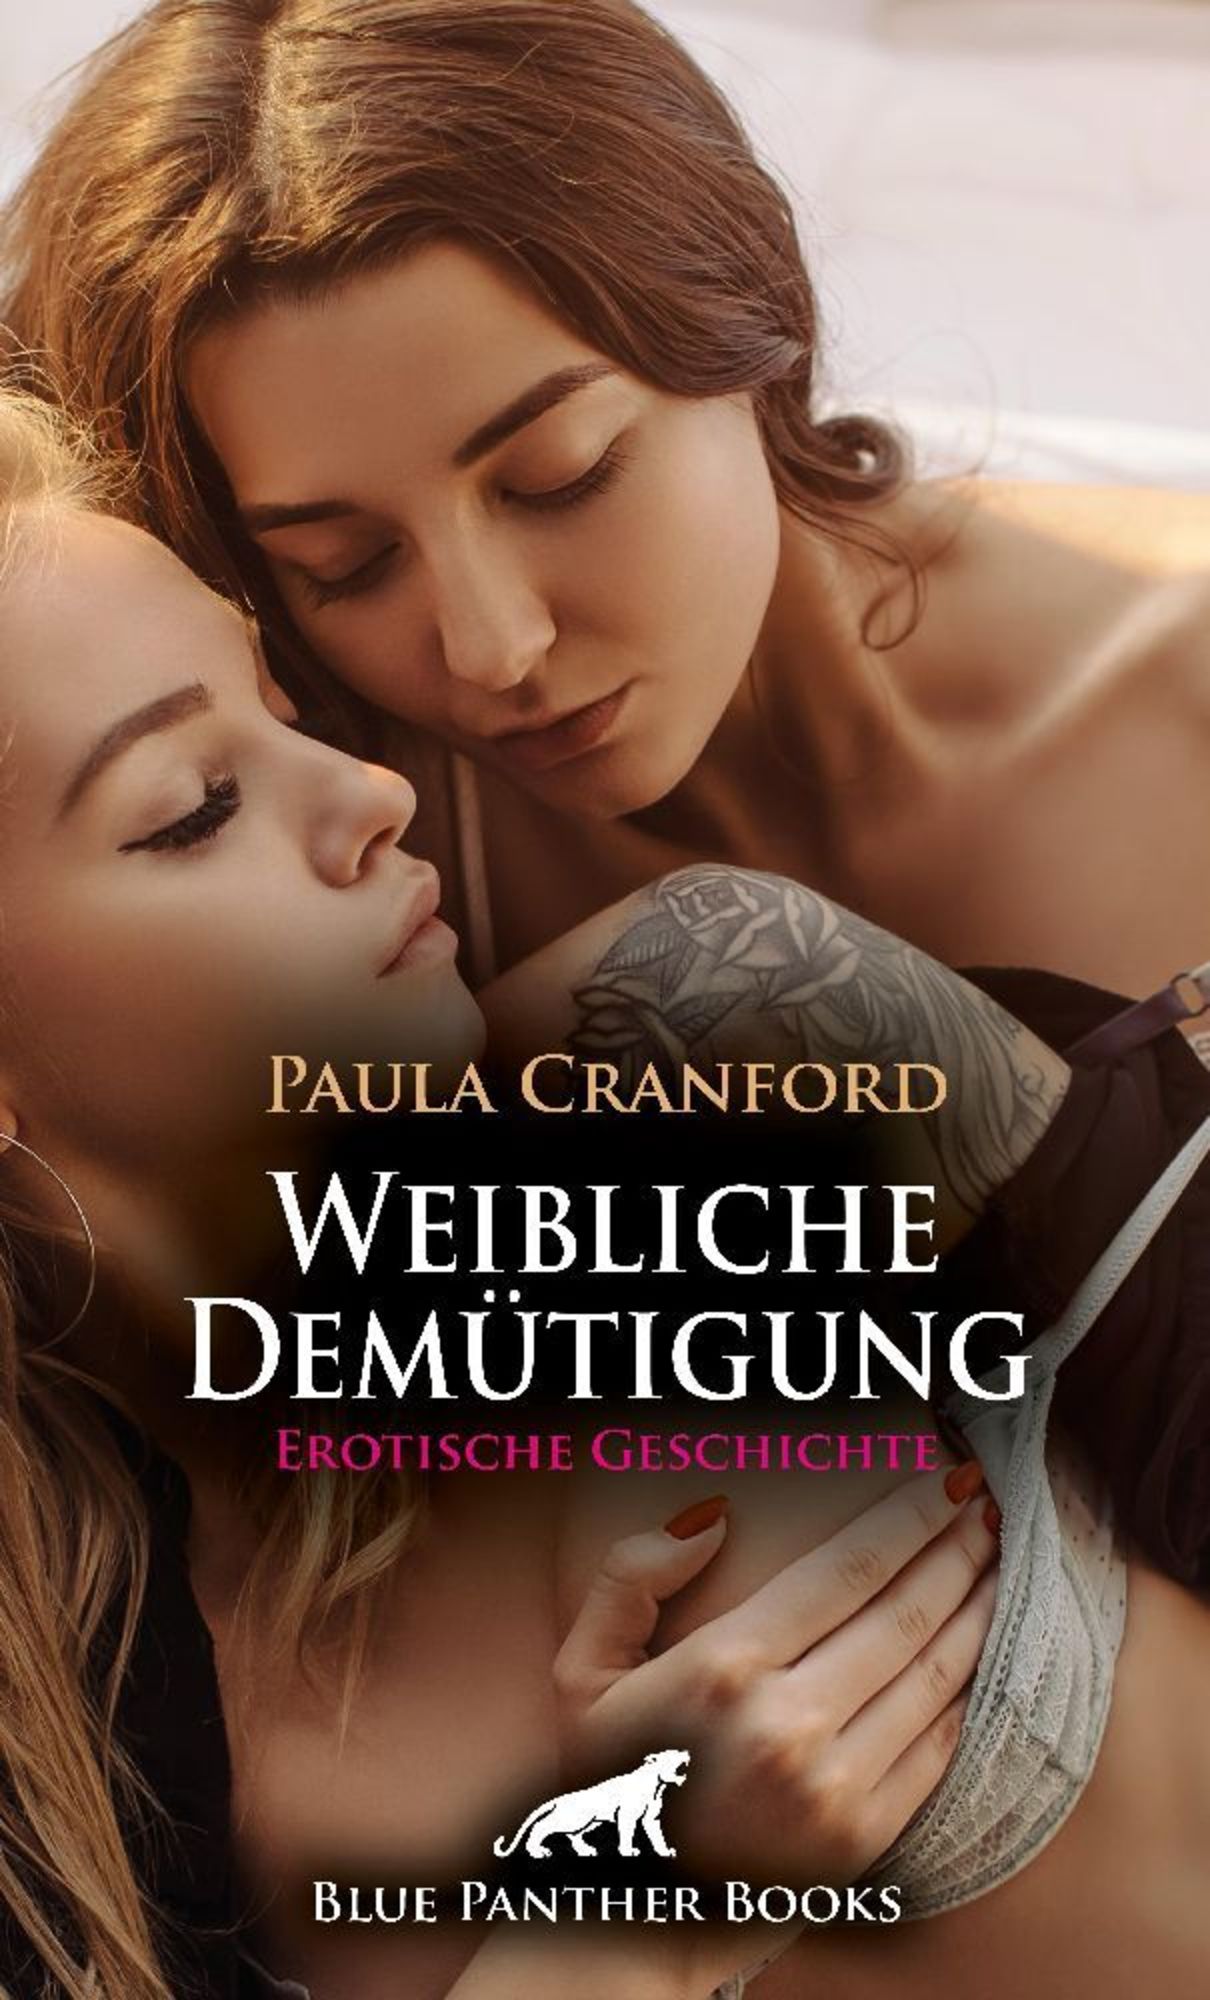 Weibliche Demütigung Erotische Geschichte + 2 weitere Geschichten von Paula Cranford - Buch